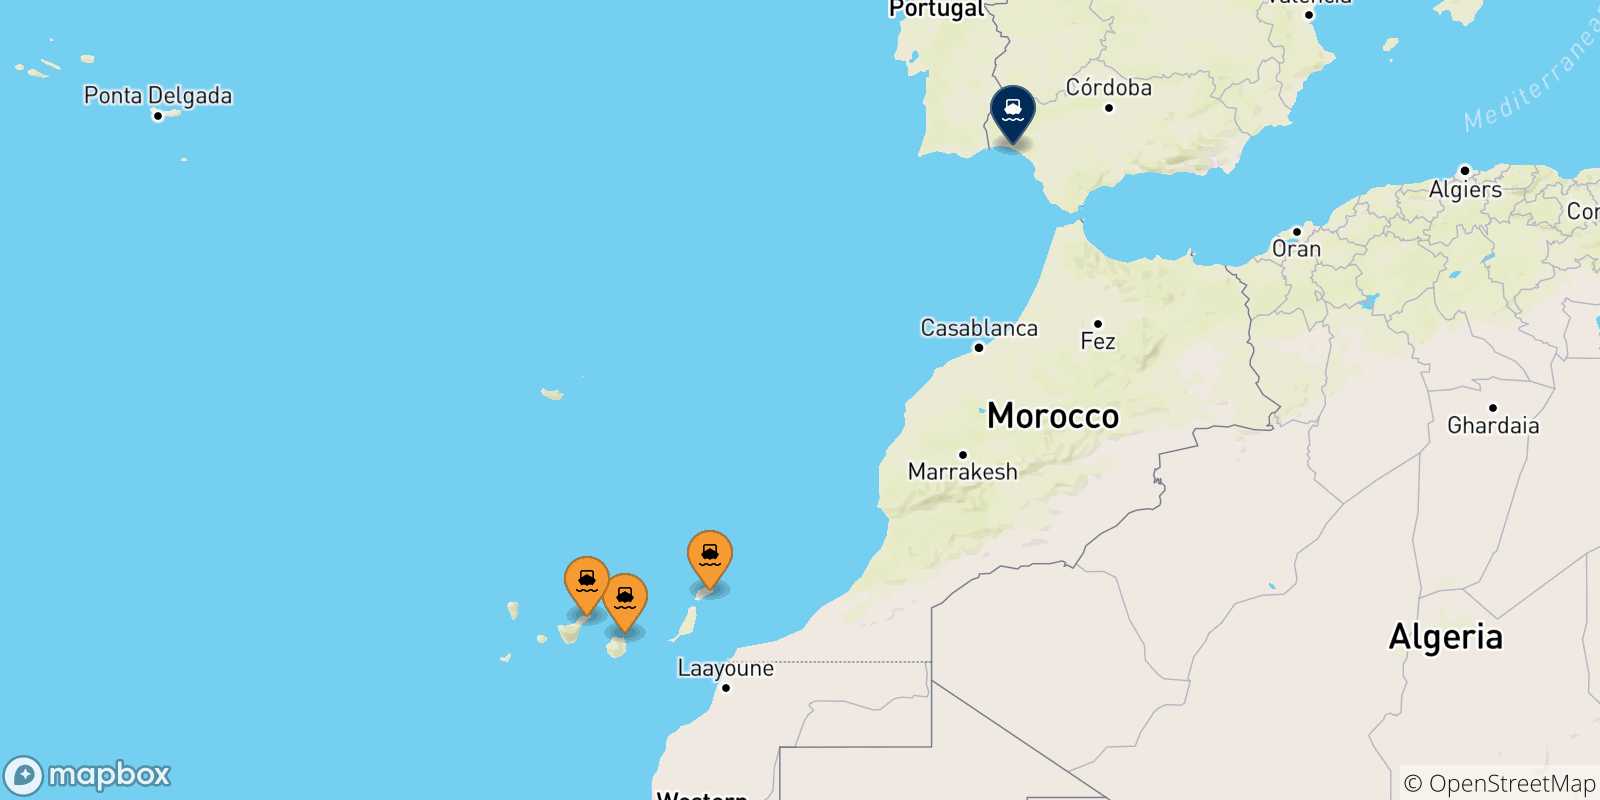 Mappa delle possibili rotte tra le Isole Canarie e Huelva